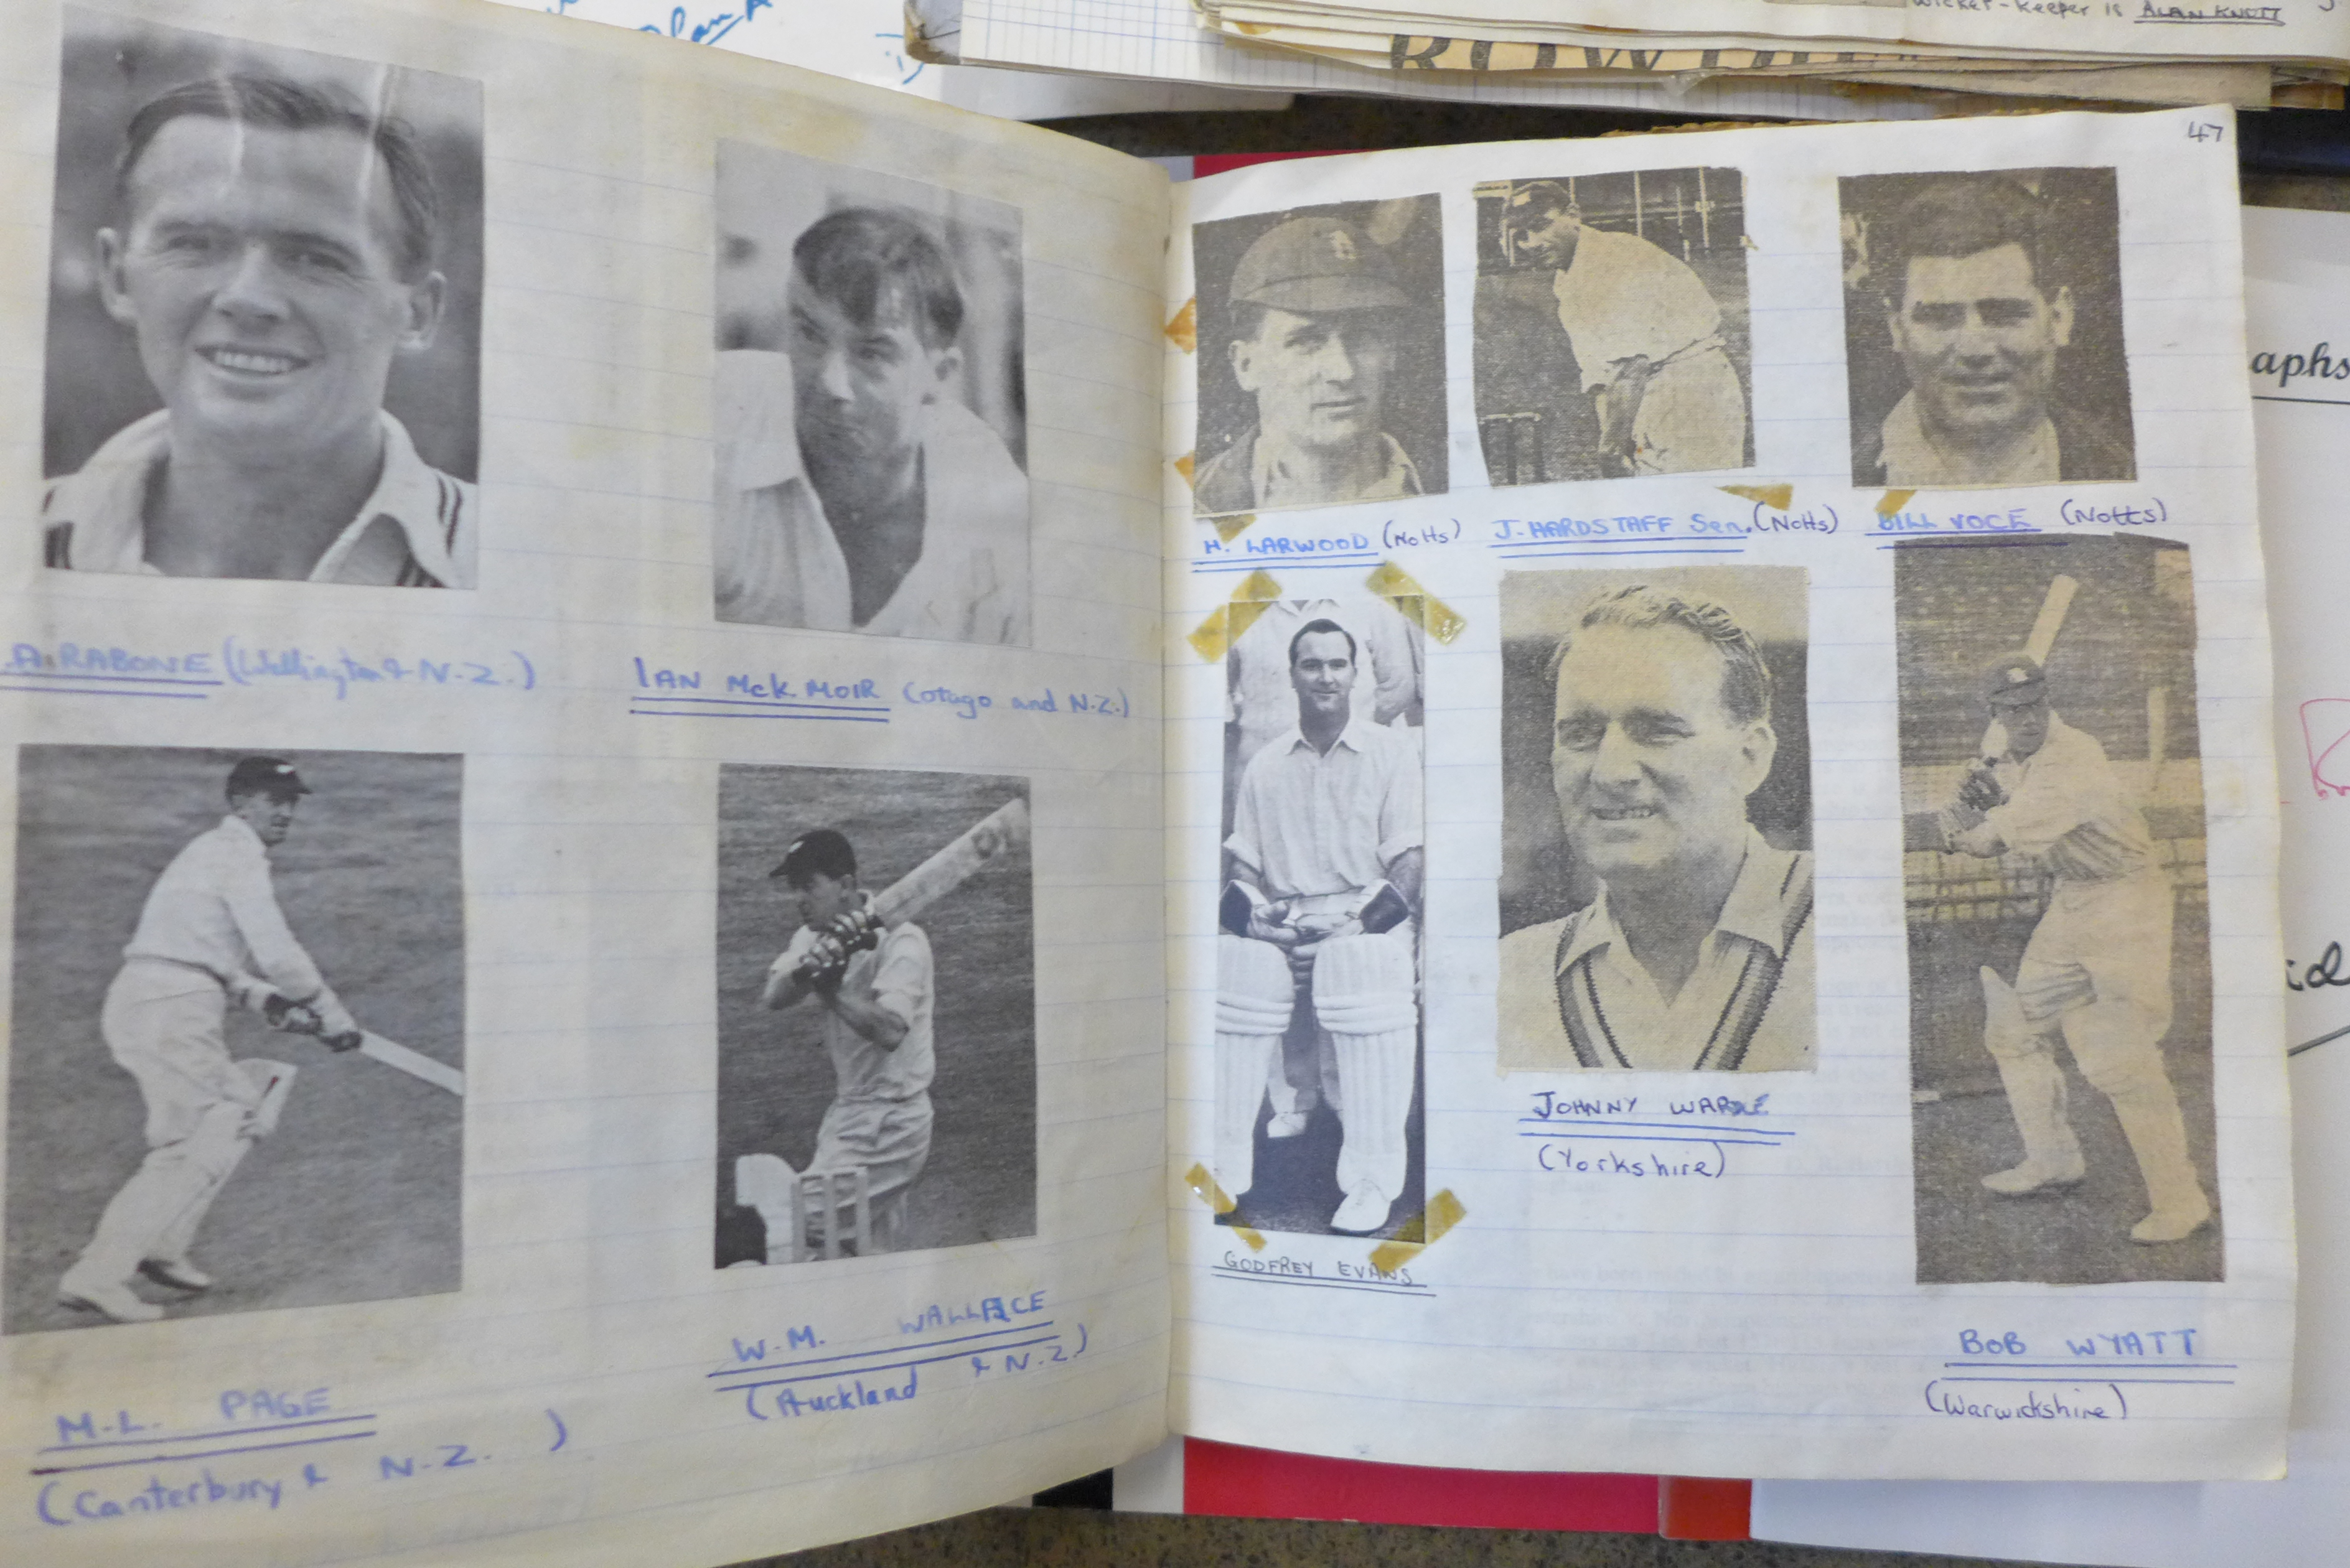 Cricket ephemera and scrap albums with autographs including Larwood, Boycott, Subba Row - Image 8 of 19